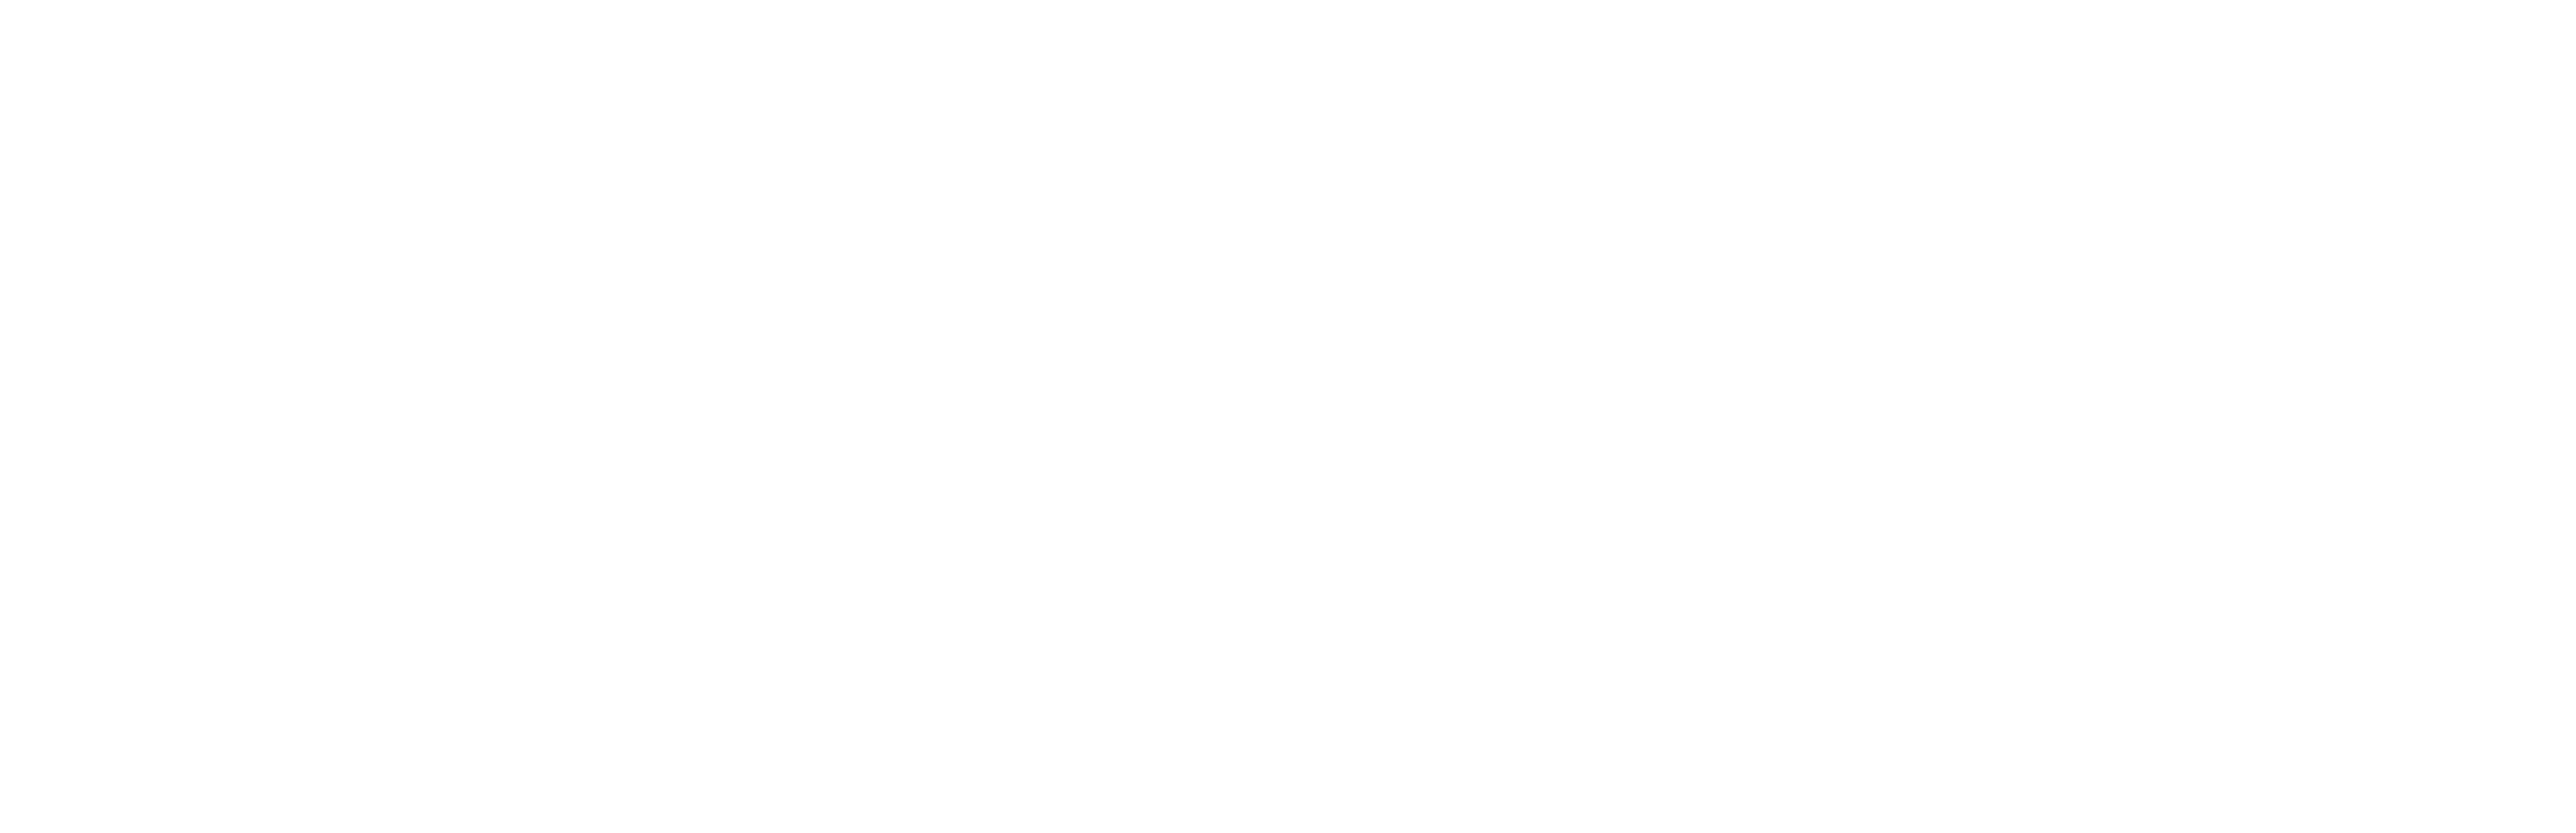 Ecossistema Brasil 60 Branco